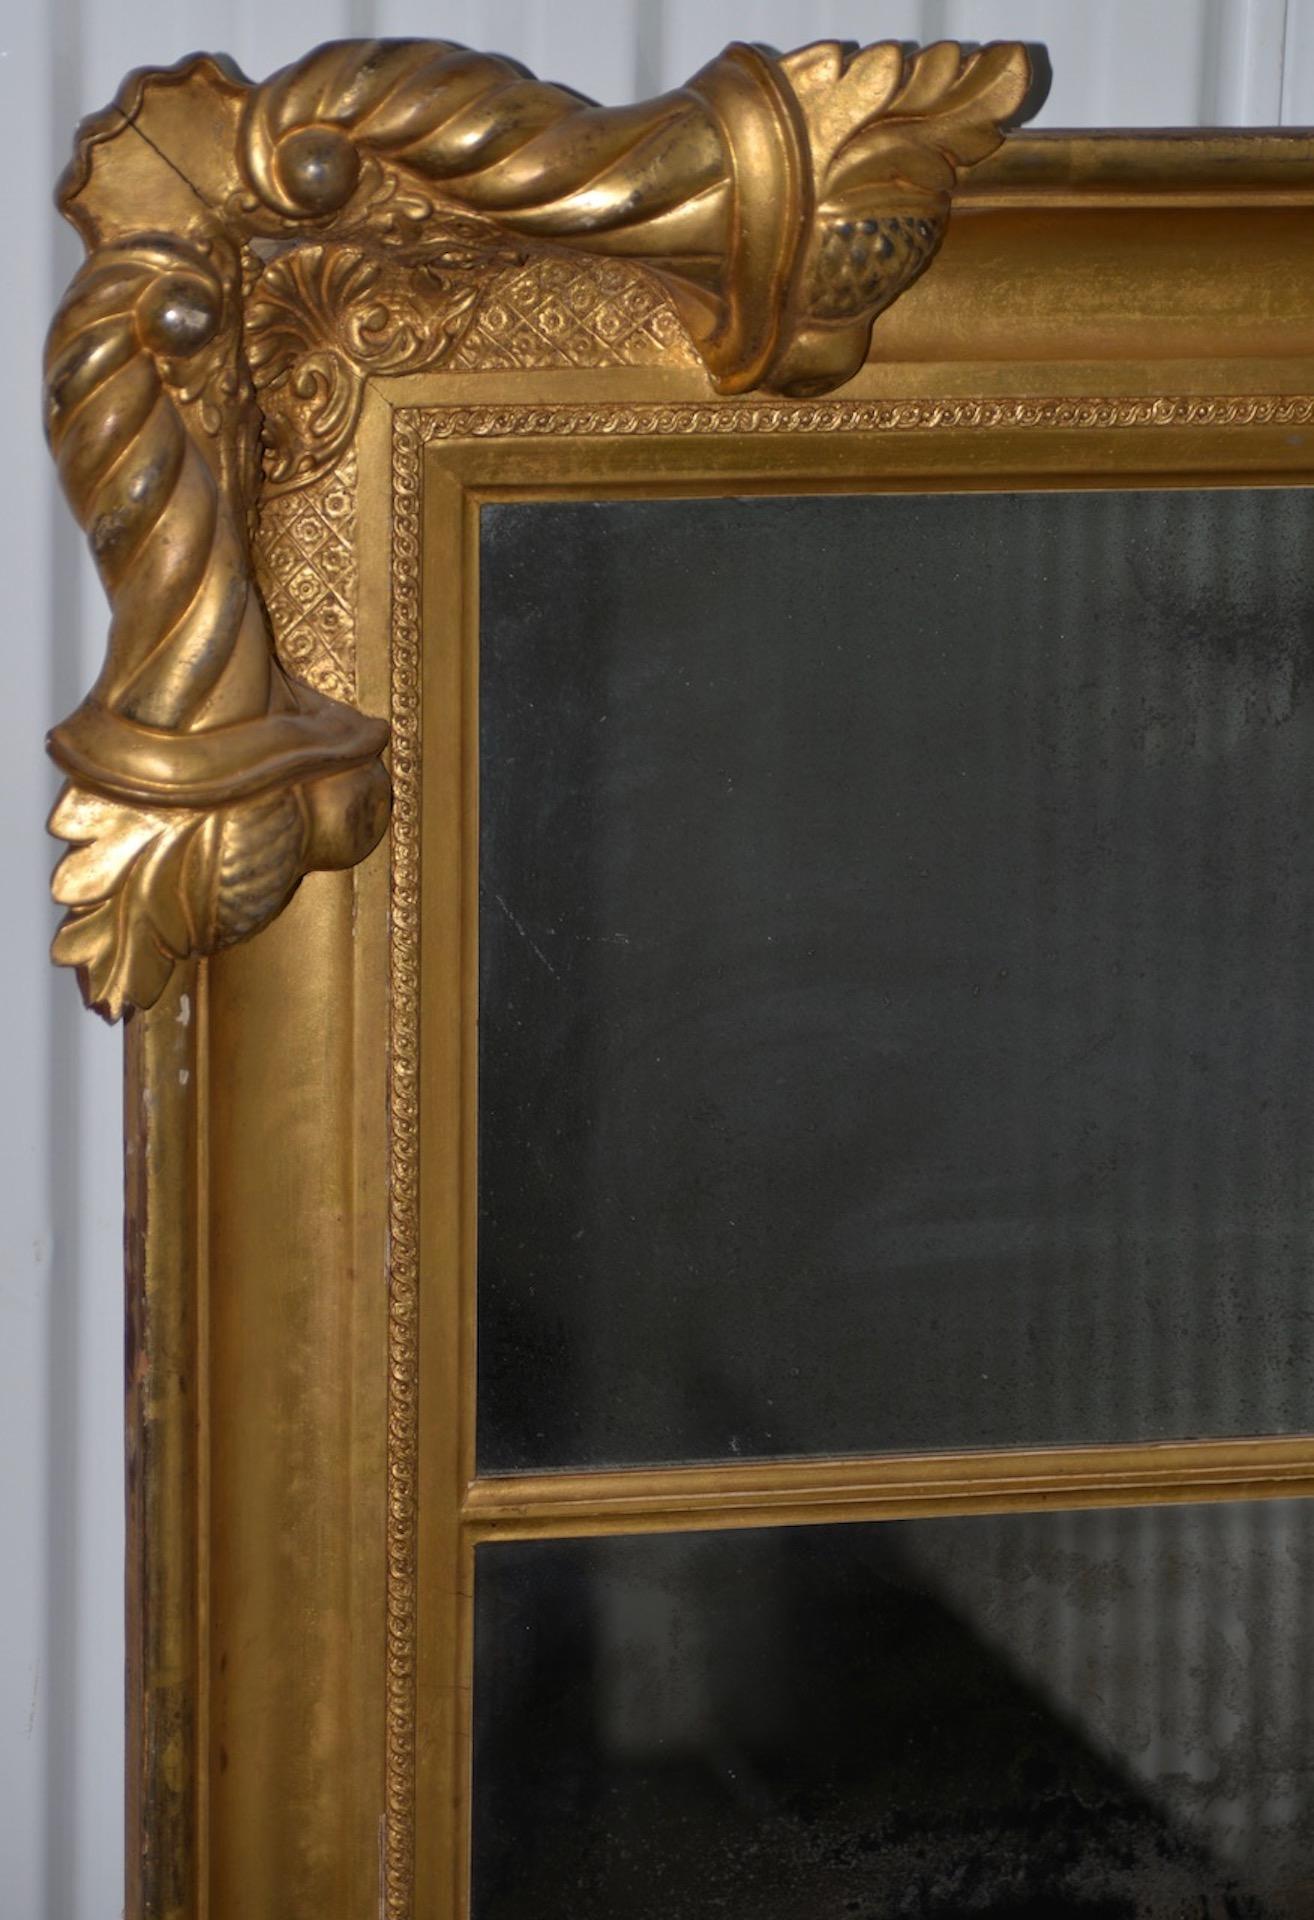 Amerikanischer geschnitzter und vergoldeter Ganzkörperspiegel des 19. Jahrhunderts, um 1890

Fantastischer rechteckiger Spiegel in voller Länge mit einem Füllhorn aus Eichenblättern und Eicheln an jeder Ecke.

Das Glas ist beschädigt und das